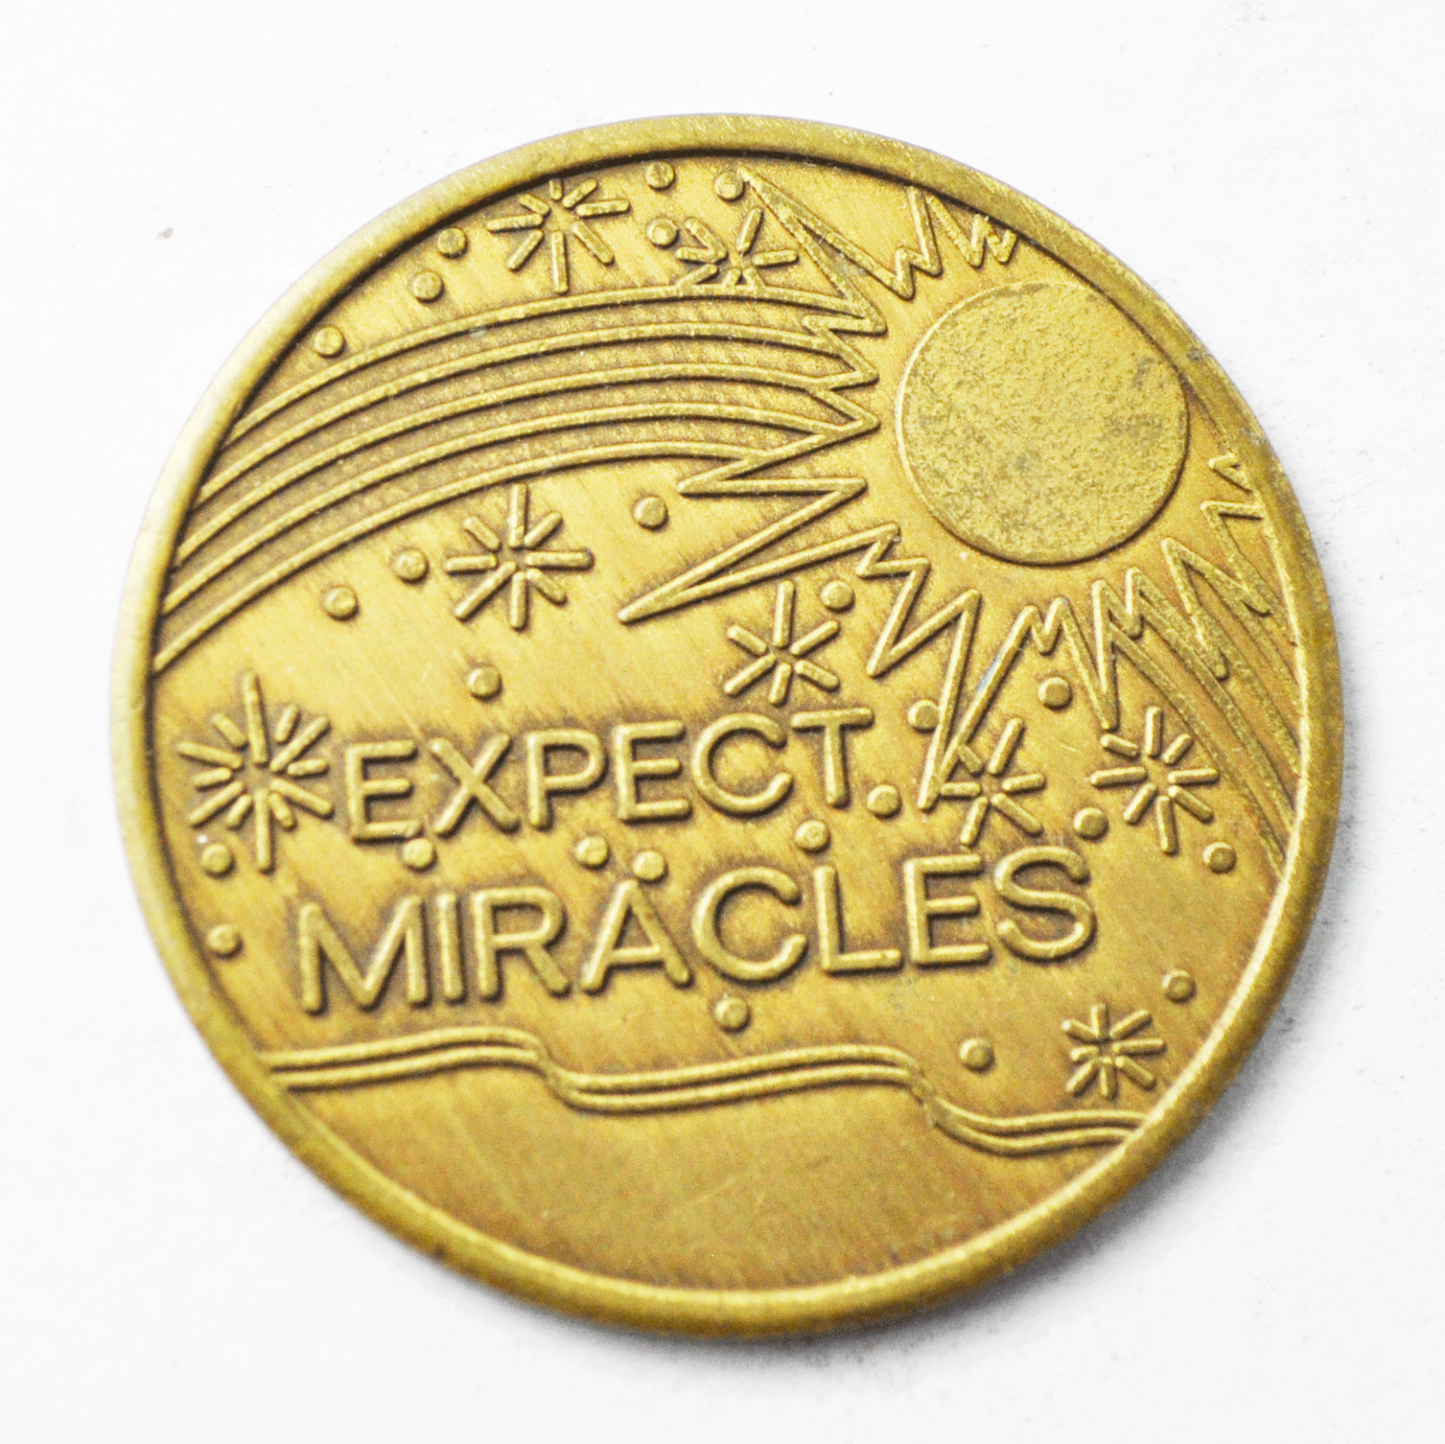 Expect Miracles The Little House Lenexa Kansas 34mm Medal